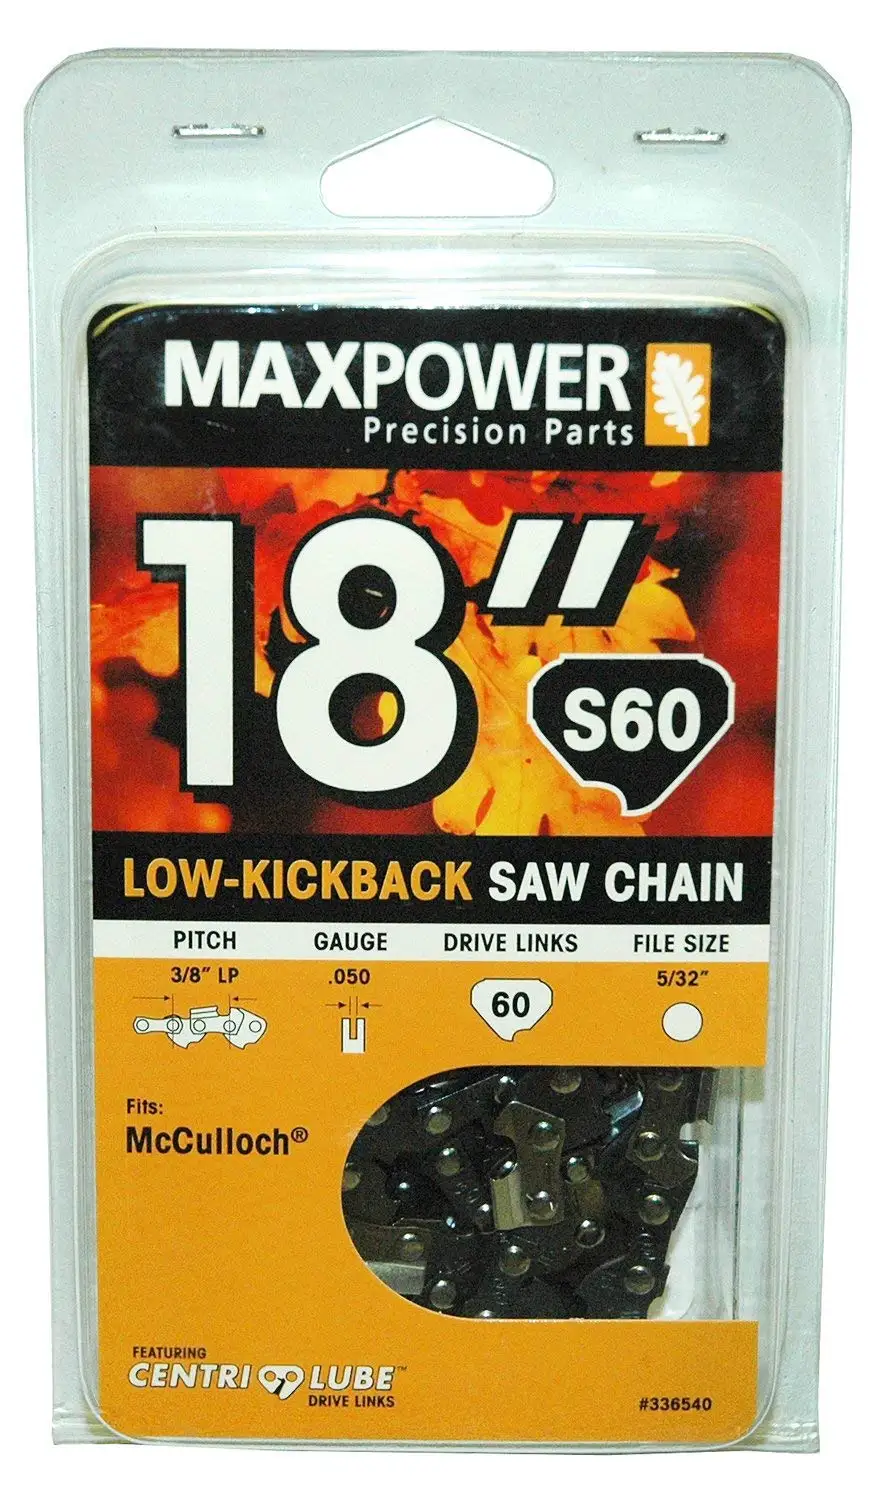 Mcculloch mac 3516 chainsaw manual diagram